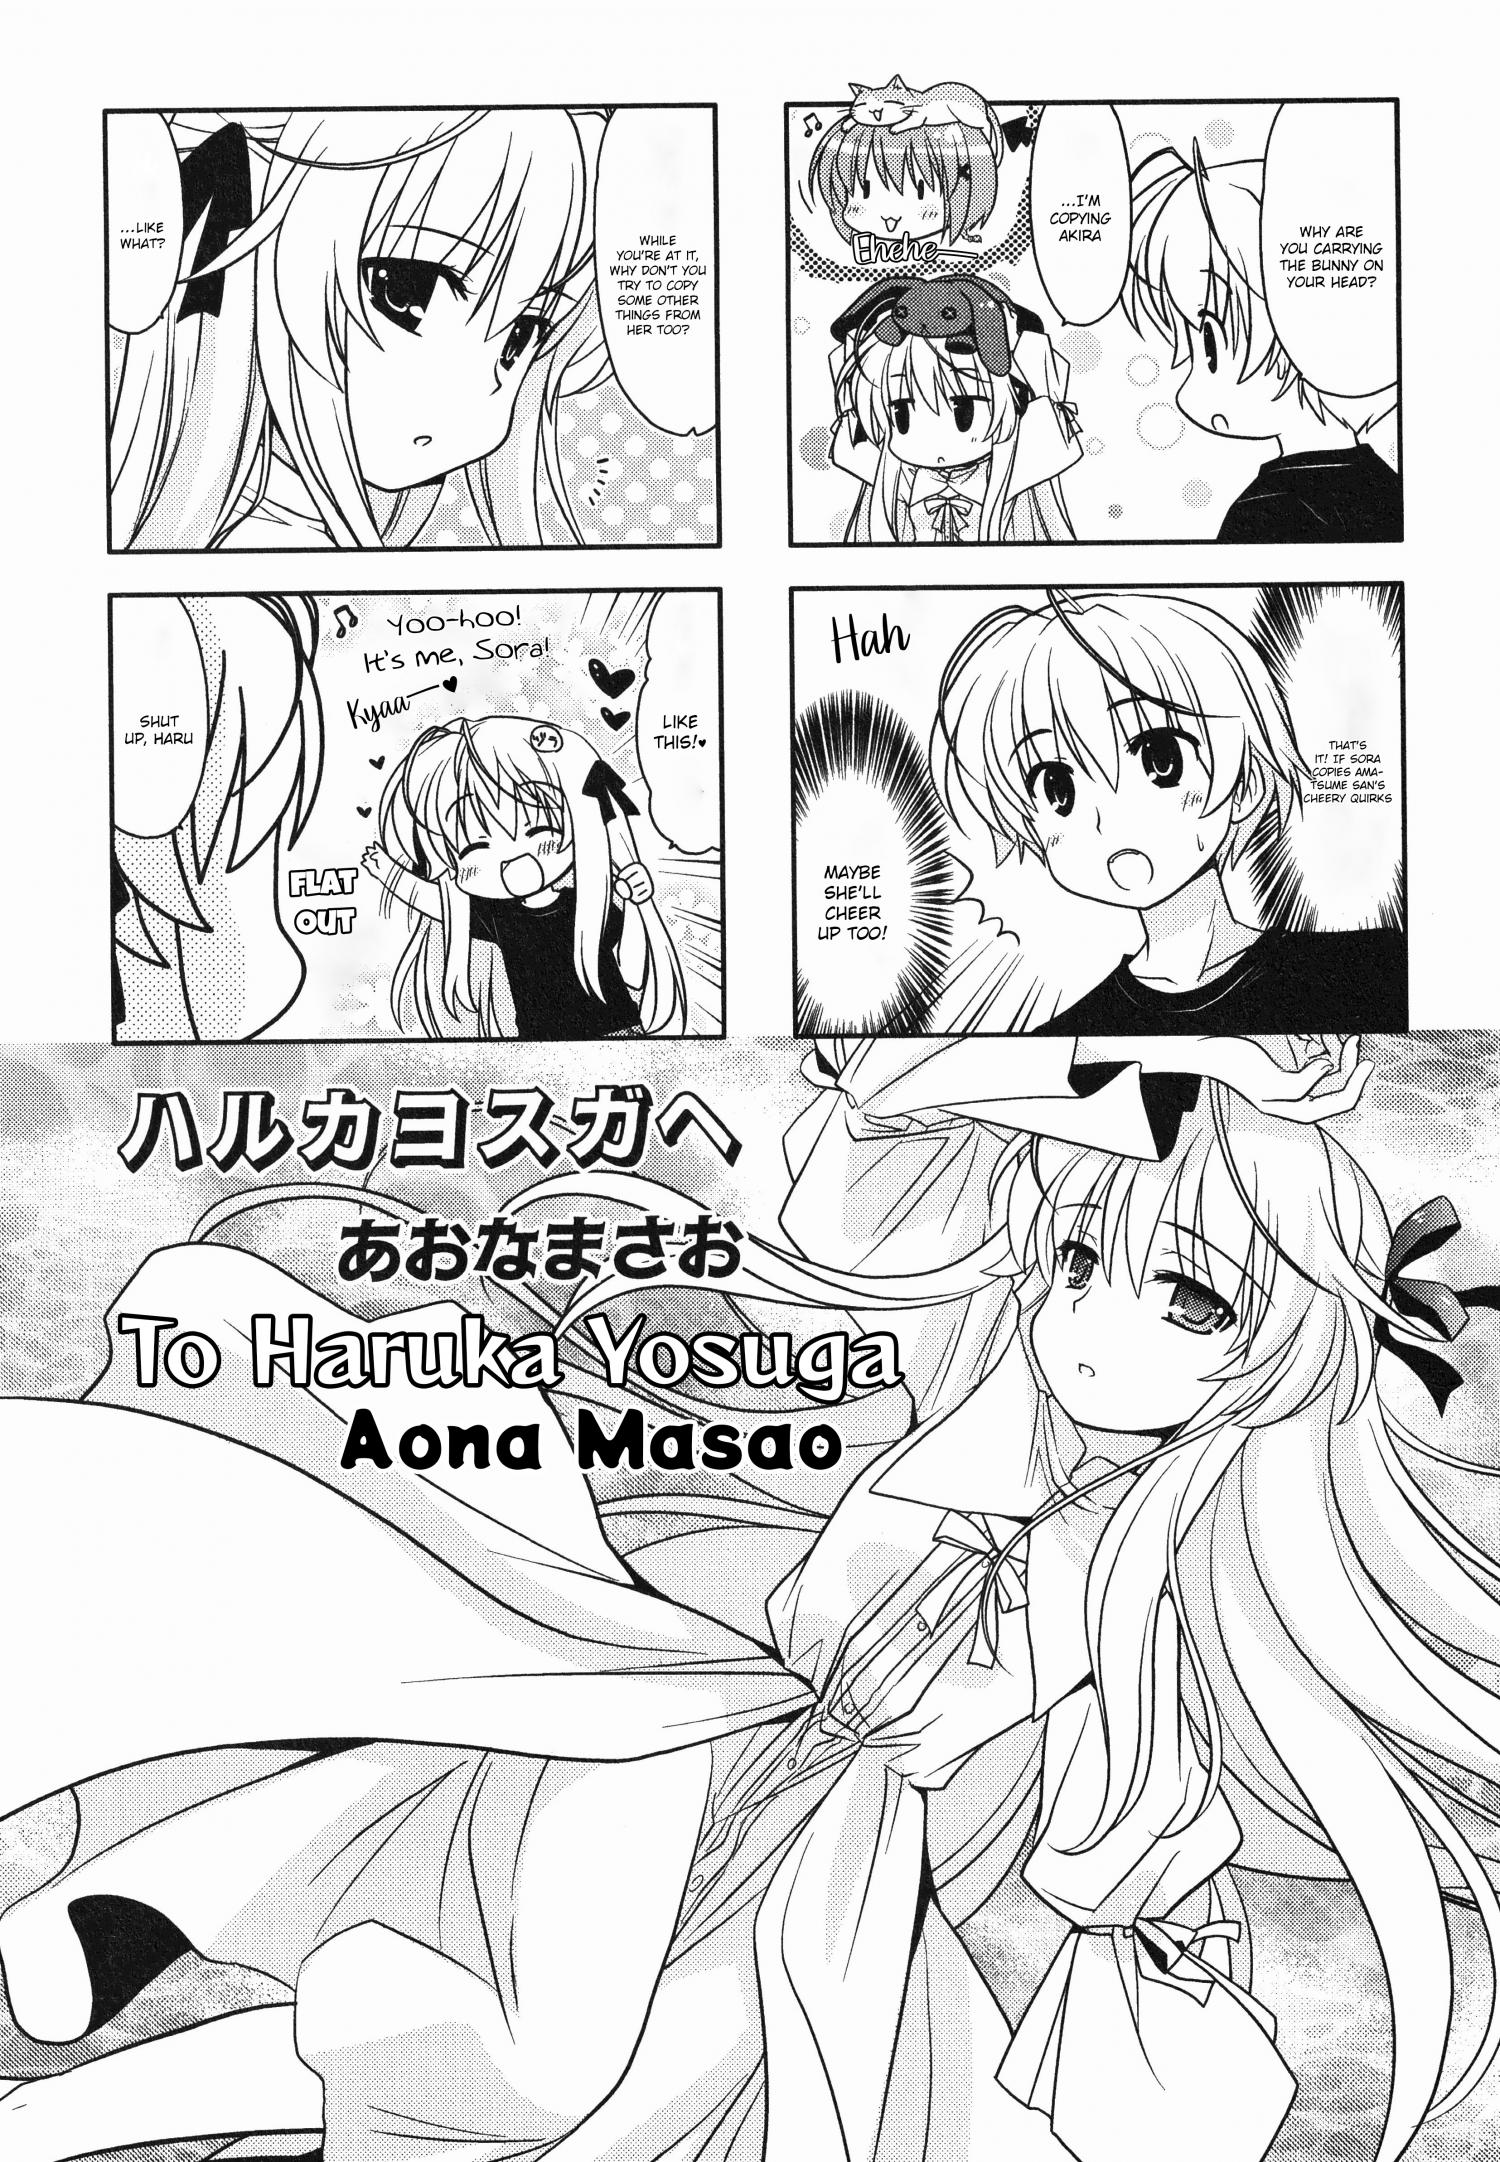 Yosuga No Sora Manga Online Free - Manganelo